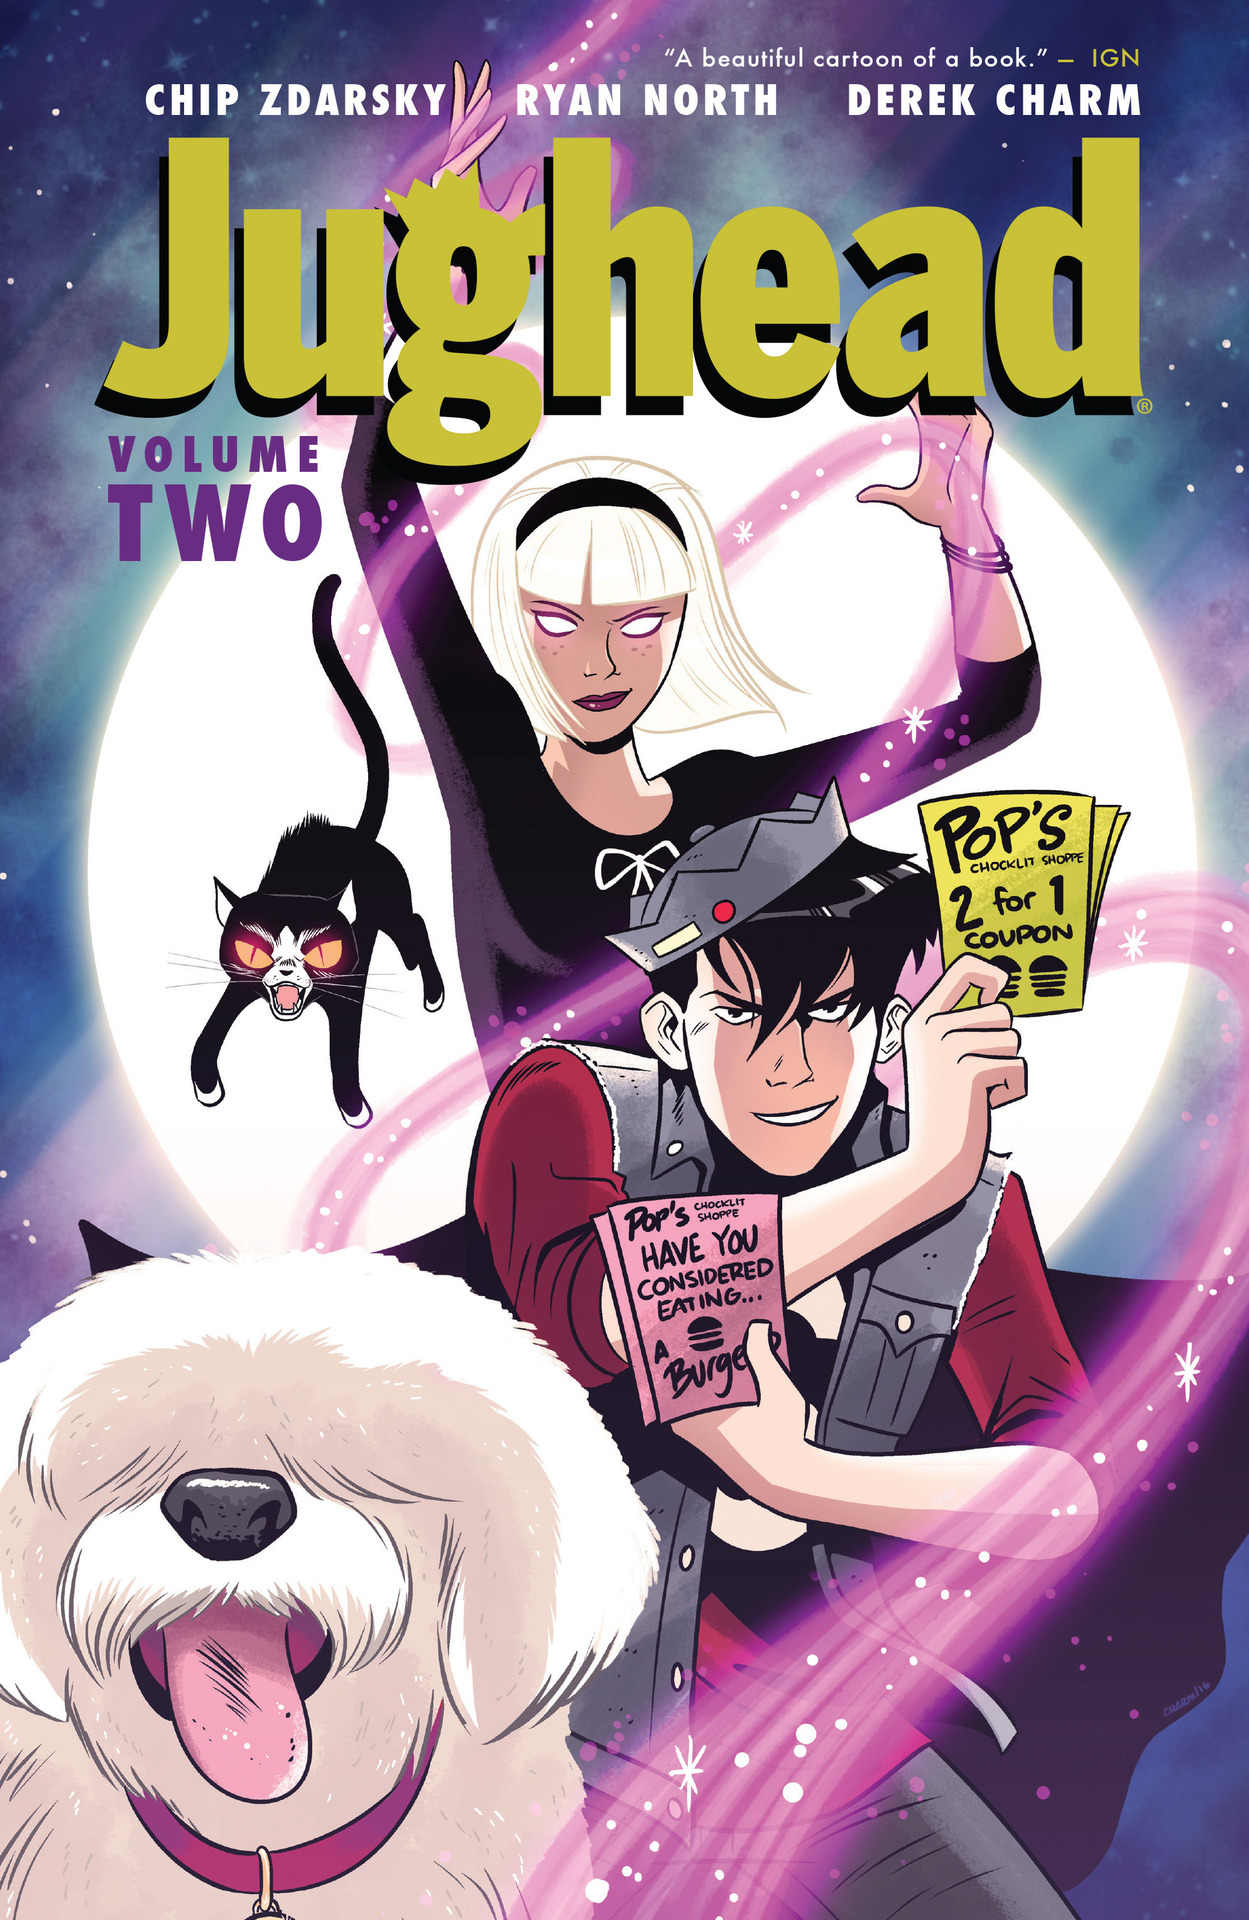 Best comic i read: ‘jughead’ volume two